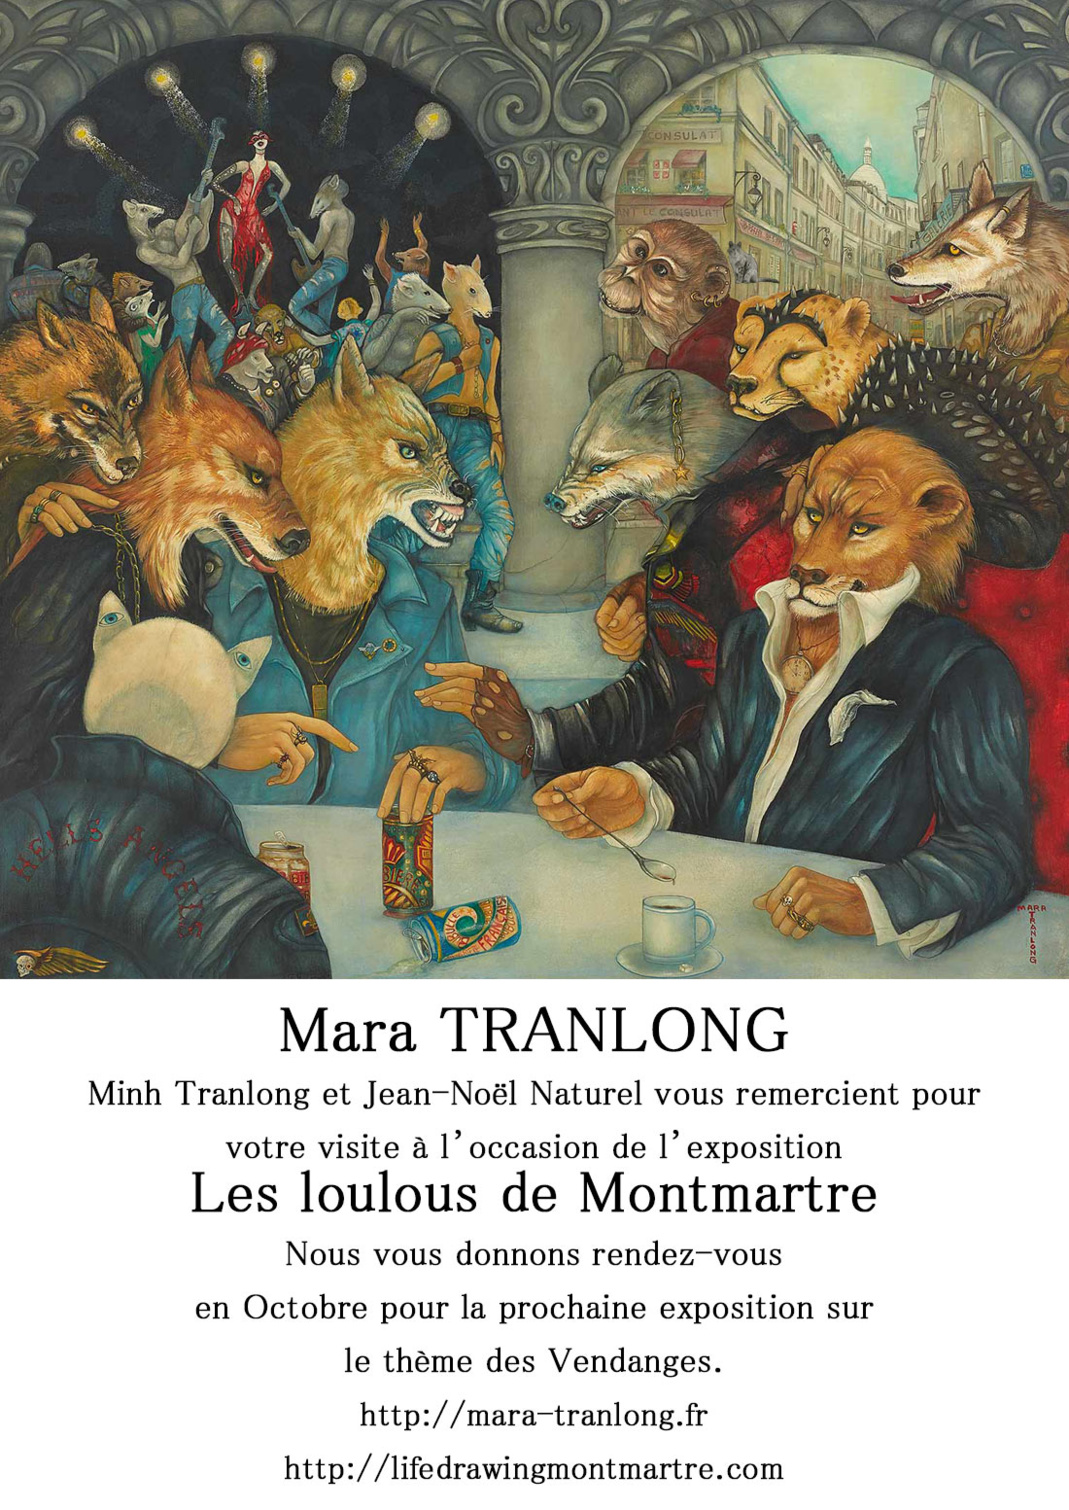 Mara Tranlong vous remercie pour votre visite à l'occasion de son exposition "Les Loulous de Montmartre"